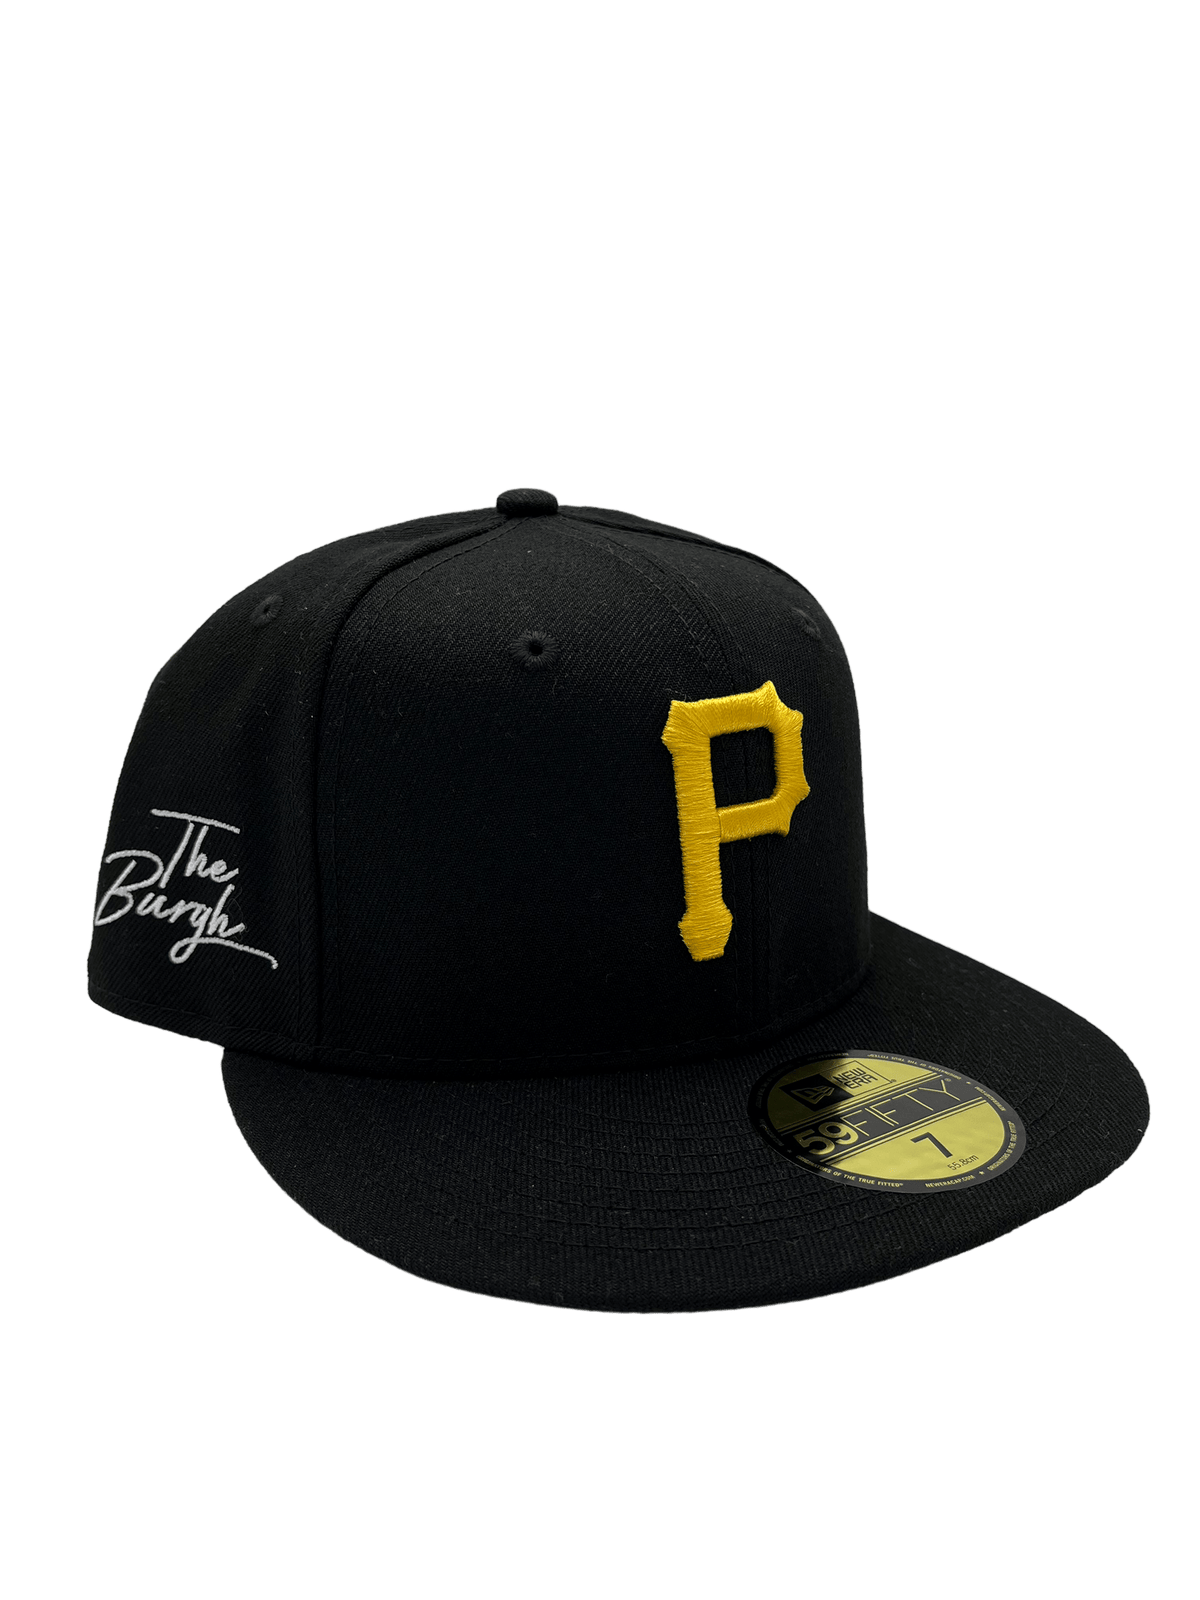 Pittsburgh Pirates Mitchell & Ness World Series Champs Snapback